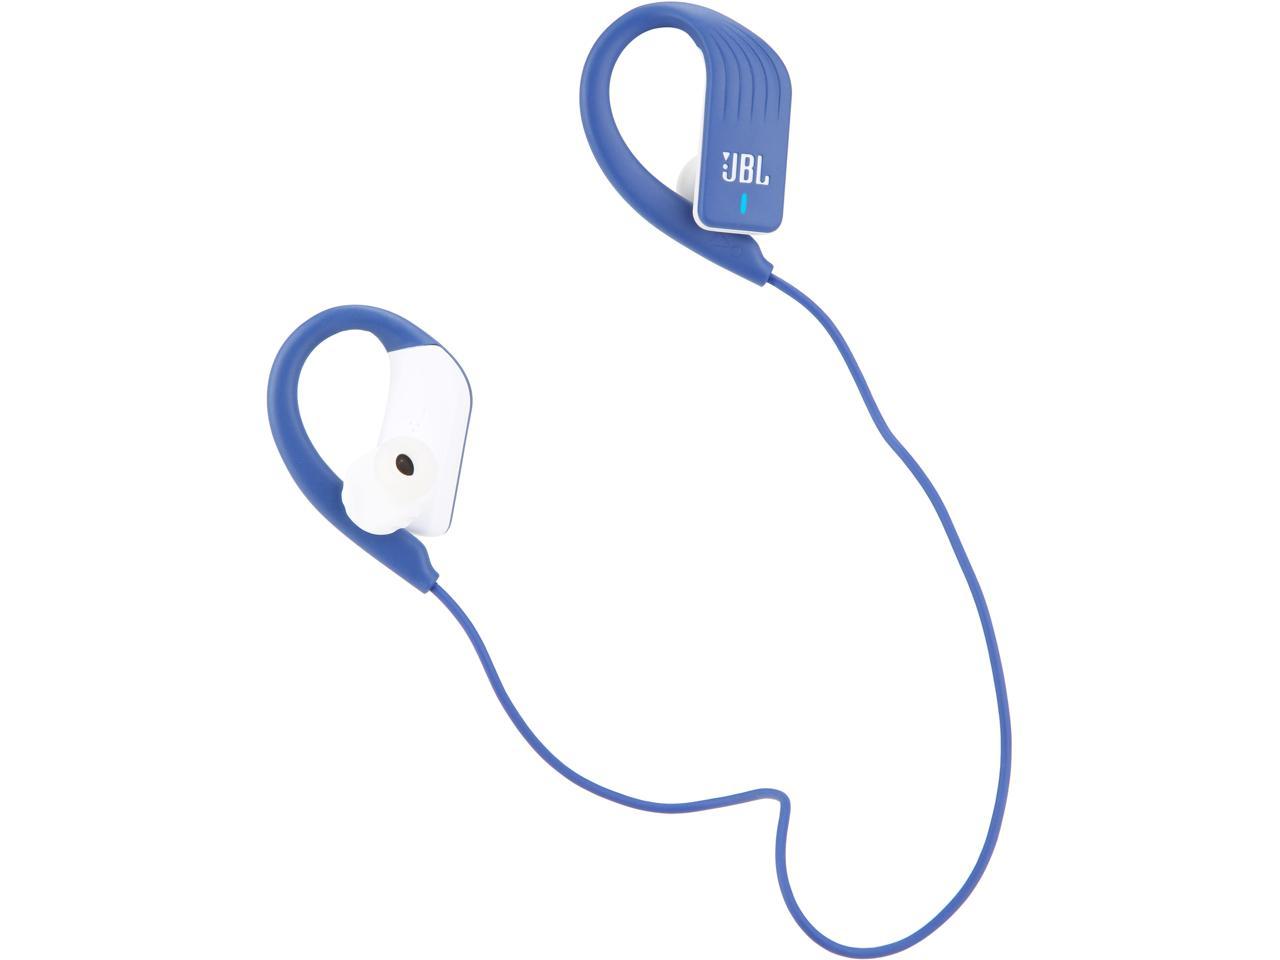 JBL SPRINT Waterproof Wireless In-Ear Sport Headphones with Touch (Blue) - Newegg.com